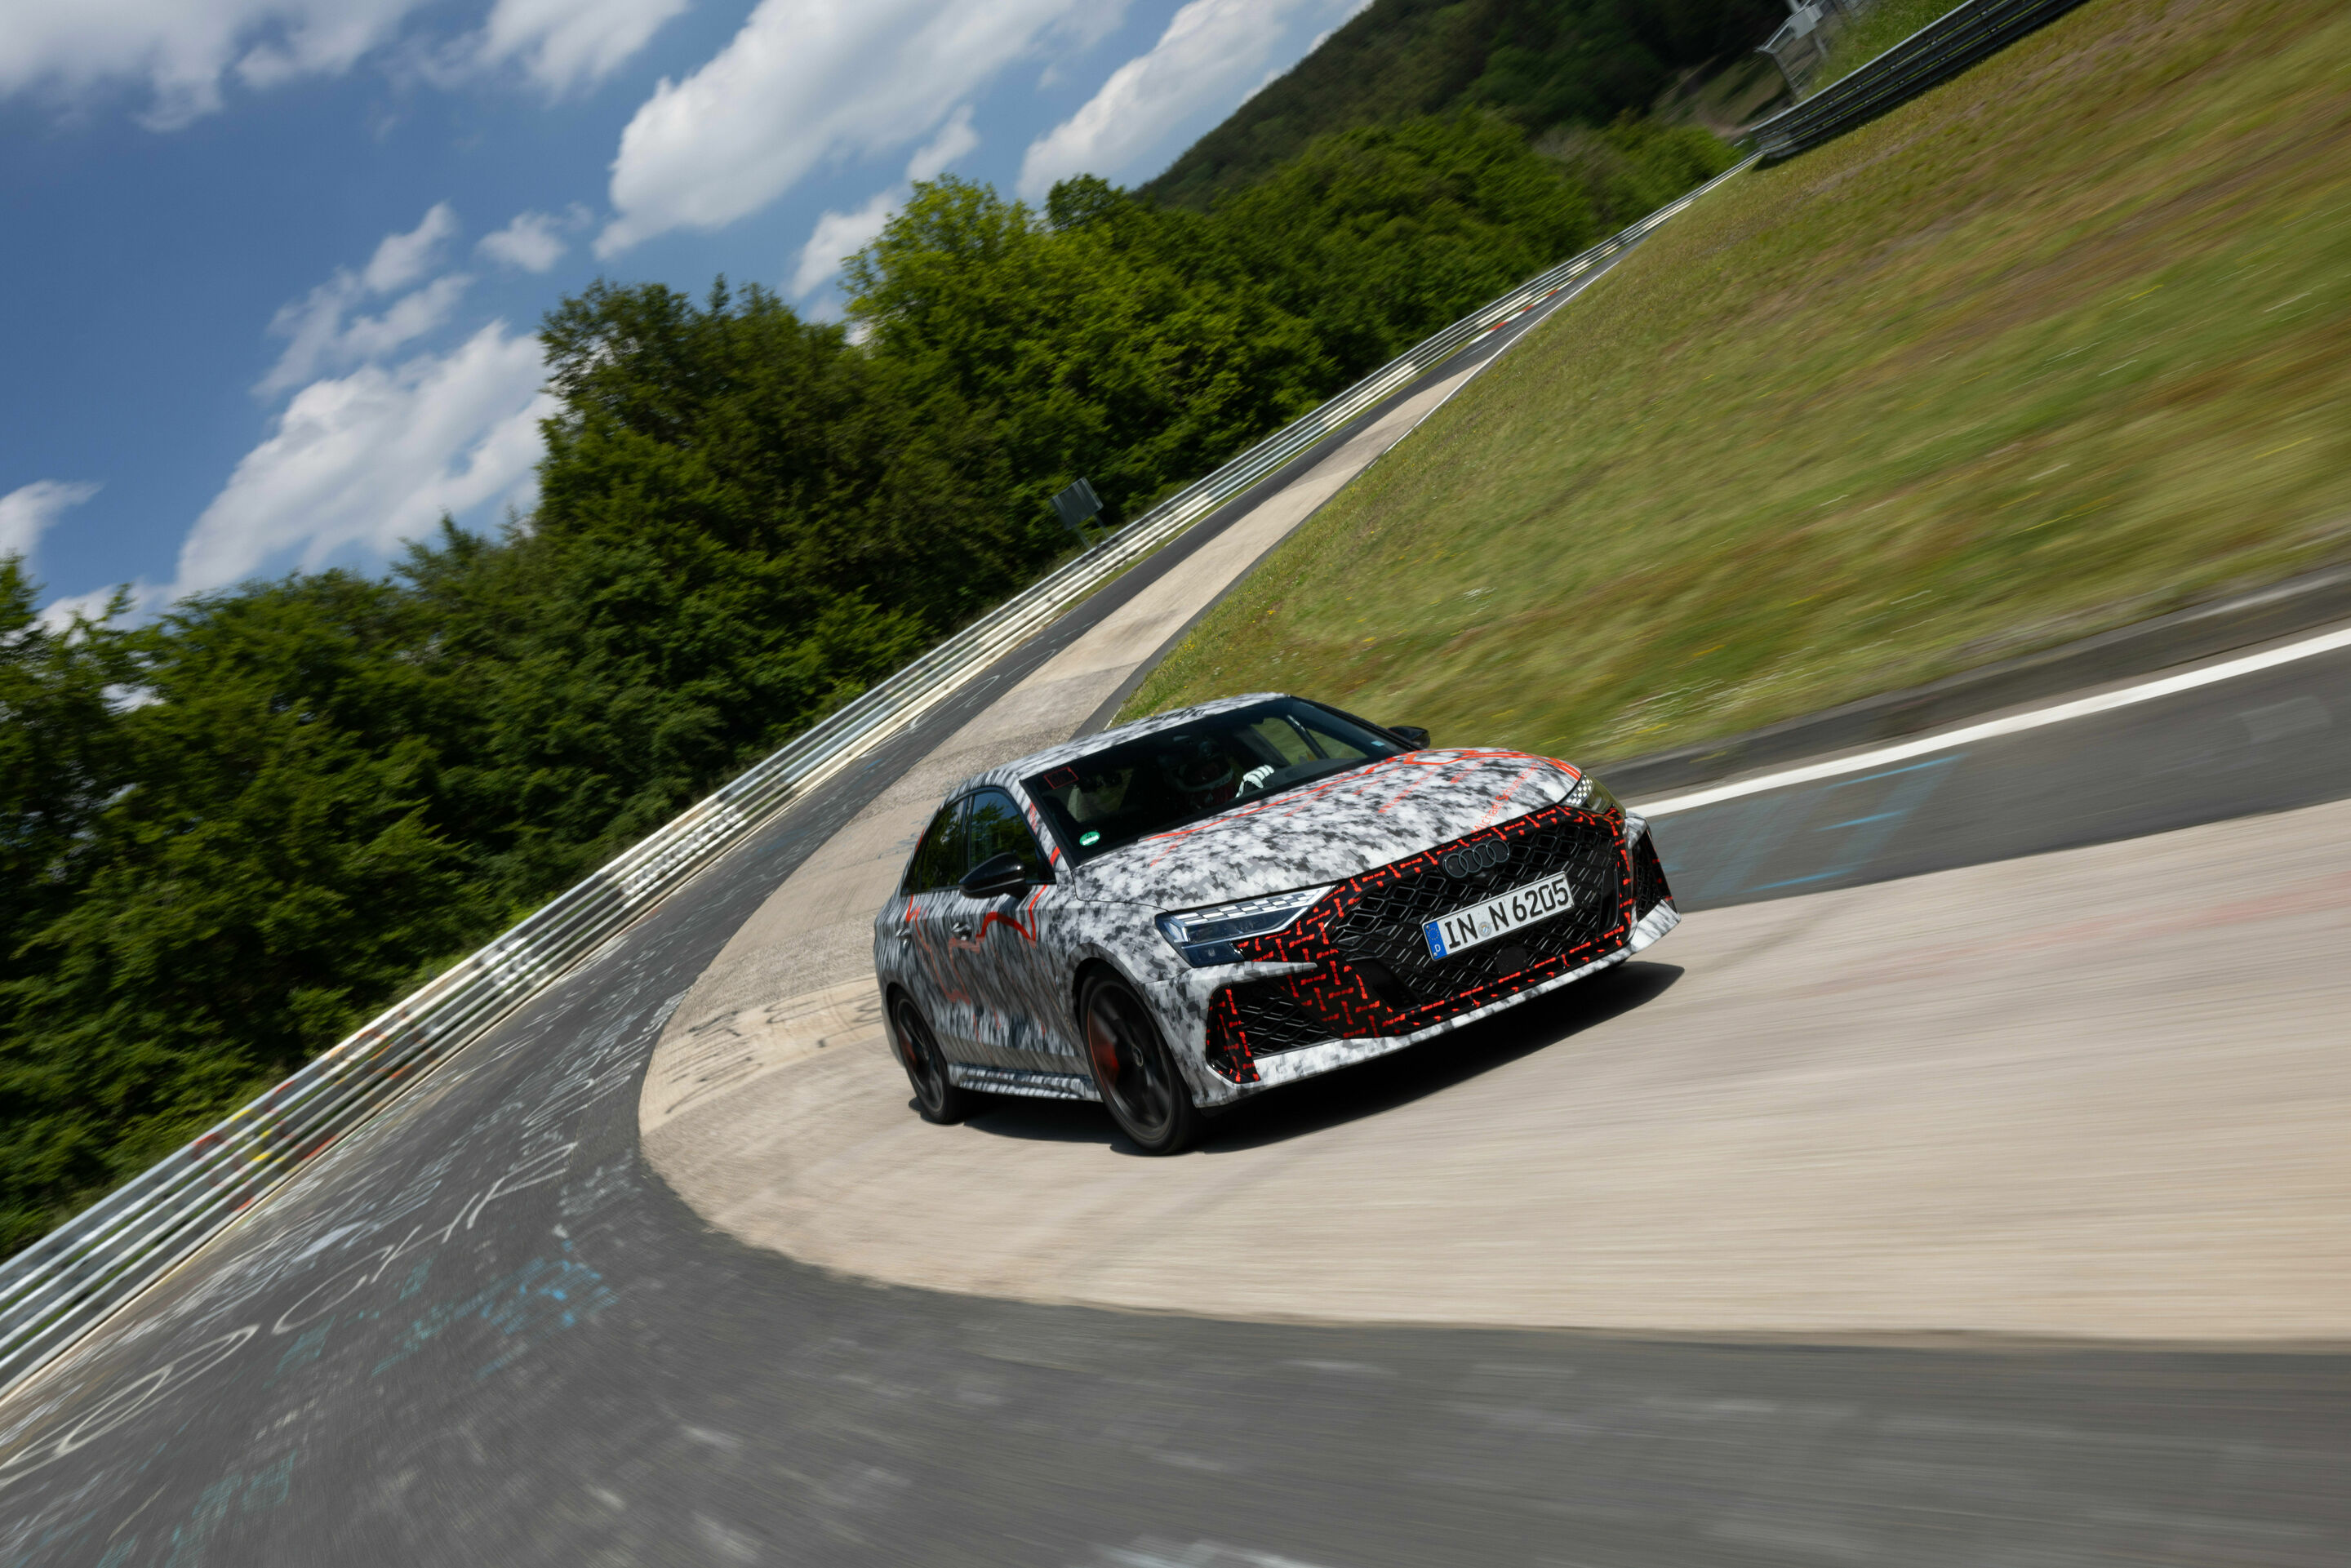 Rundenrekord für Audi Sport im Kompaktsegment